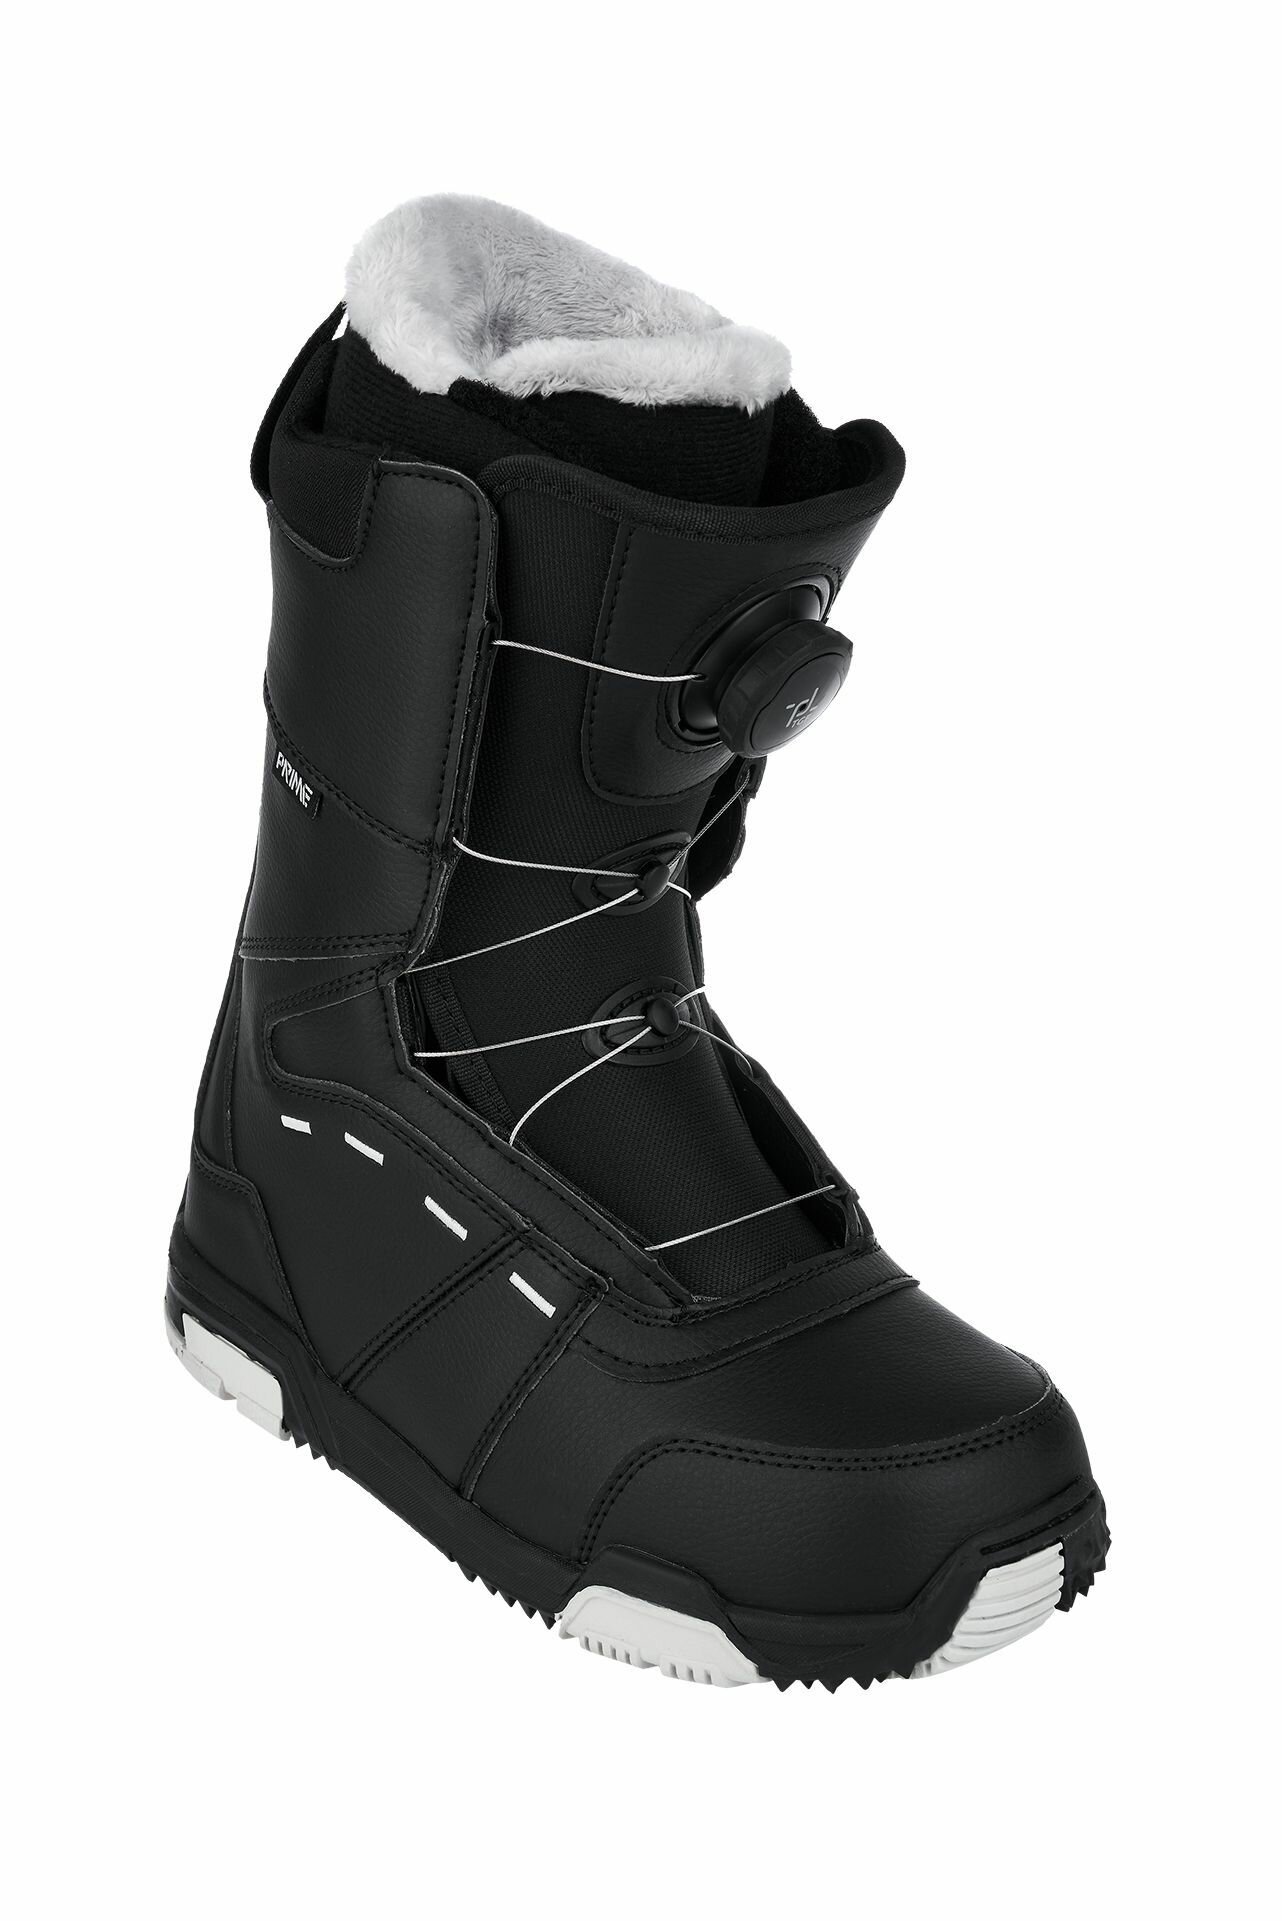 Ботинки сноубордические PRIME COOL-C1 TGF Black (быстрая шнуровка) (41 RU / 27 cm)